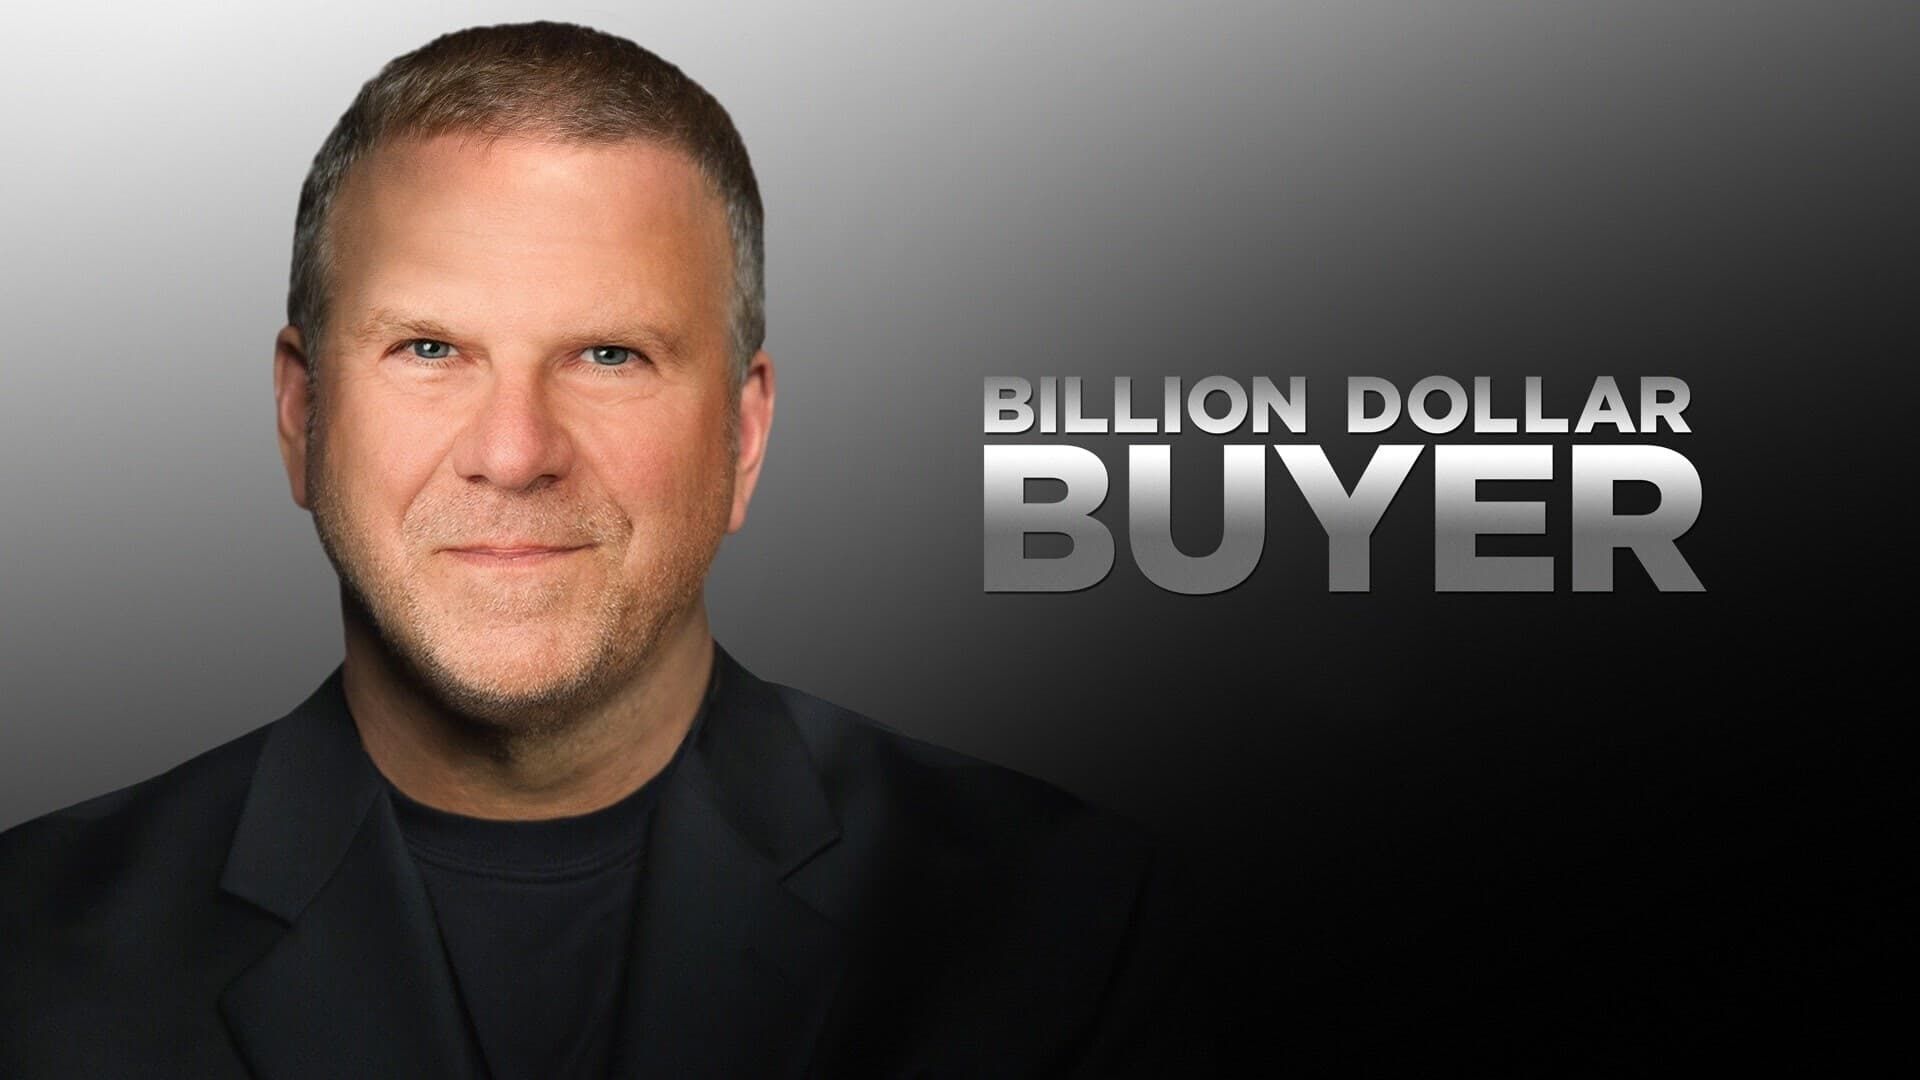 Billion Dollar Buyer background